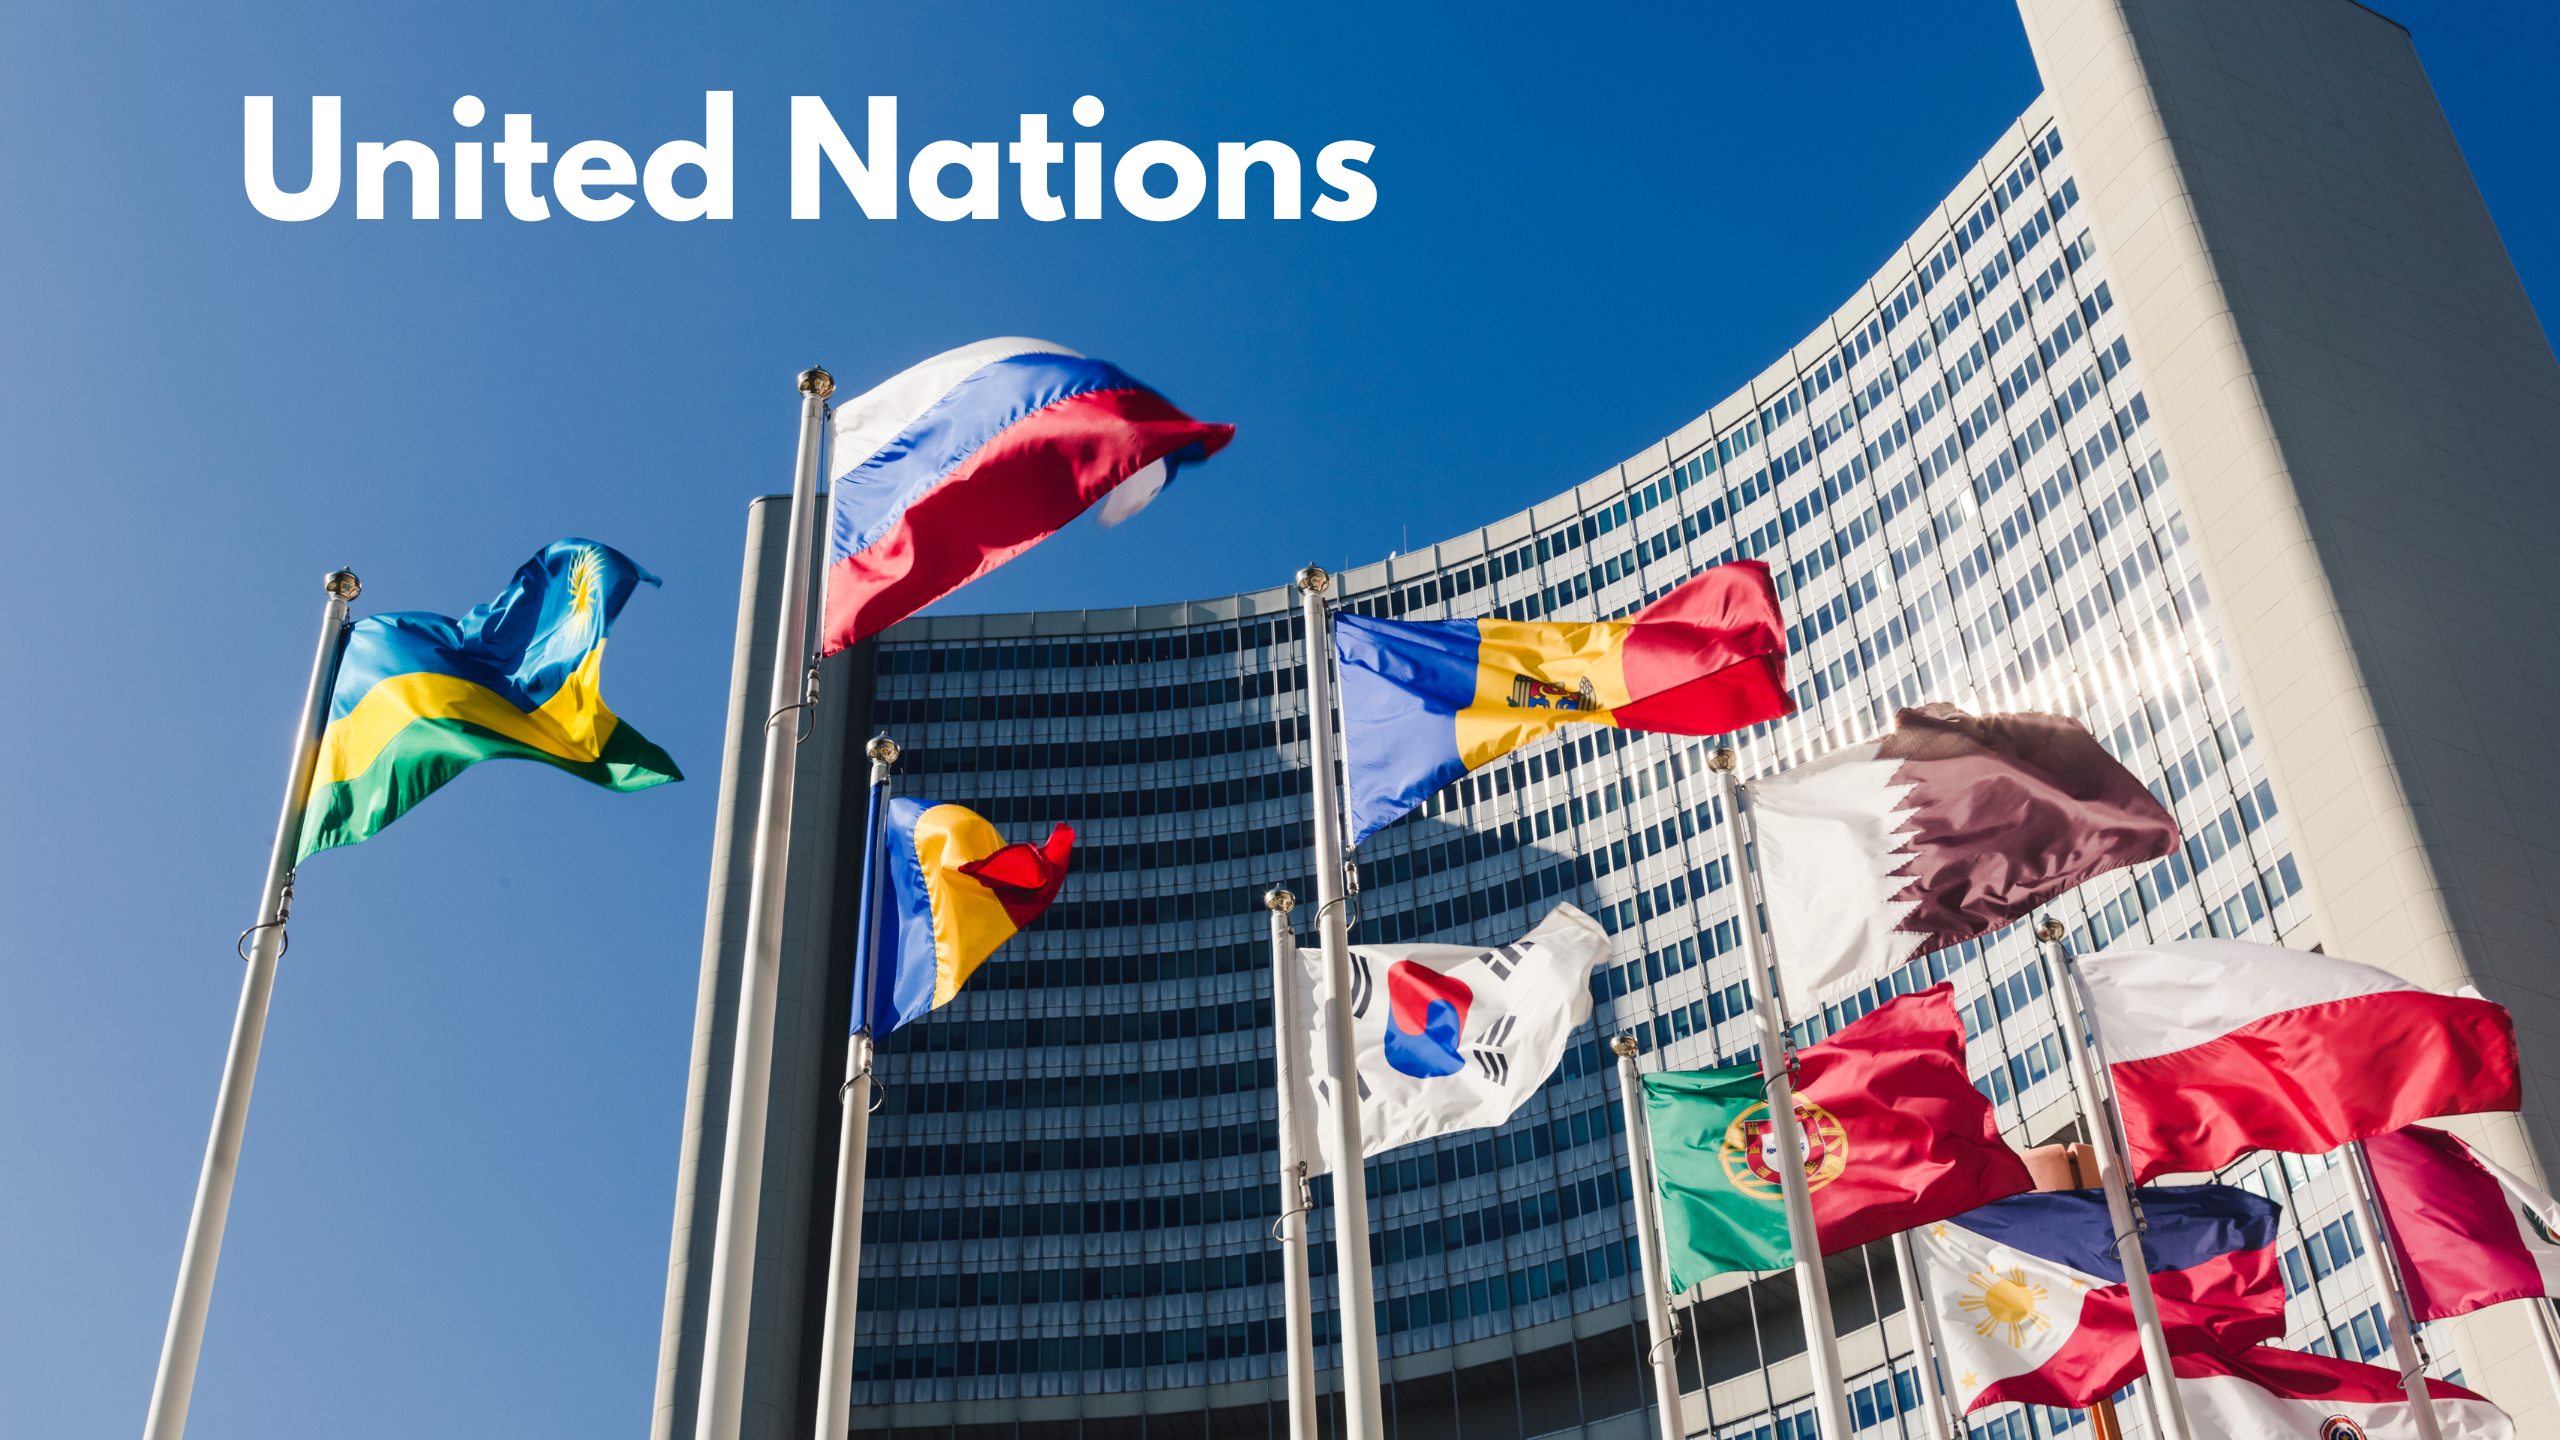 Штаб ООН В России. Здание ООН В Нью-Йорке флаги. Флаг ООН И России. Флаги у здания ООН.